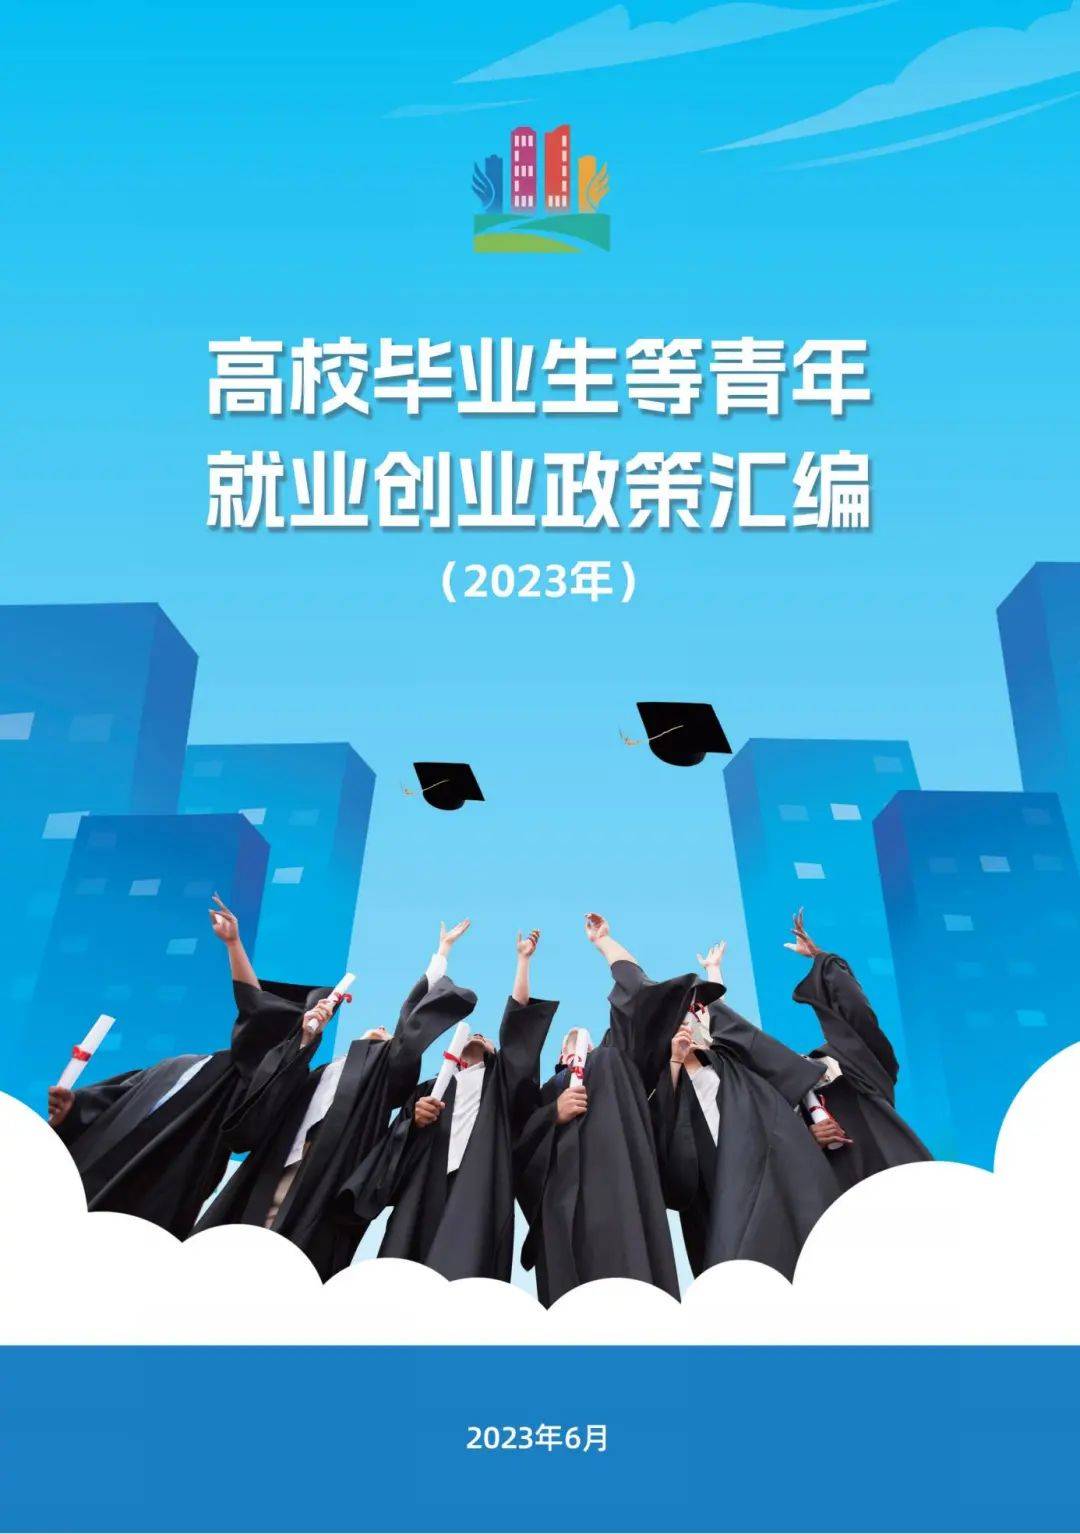 2022届高校毕业生就业促进周启动_中国劳动关系学院就业指导中心